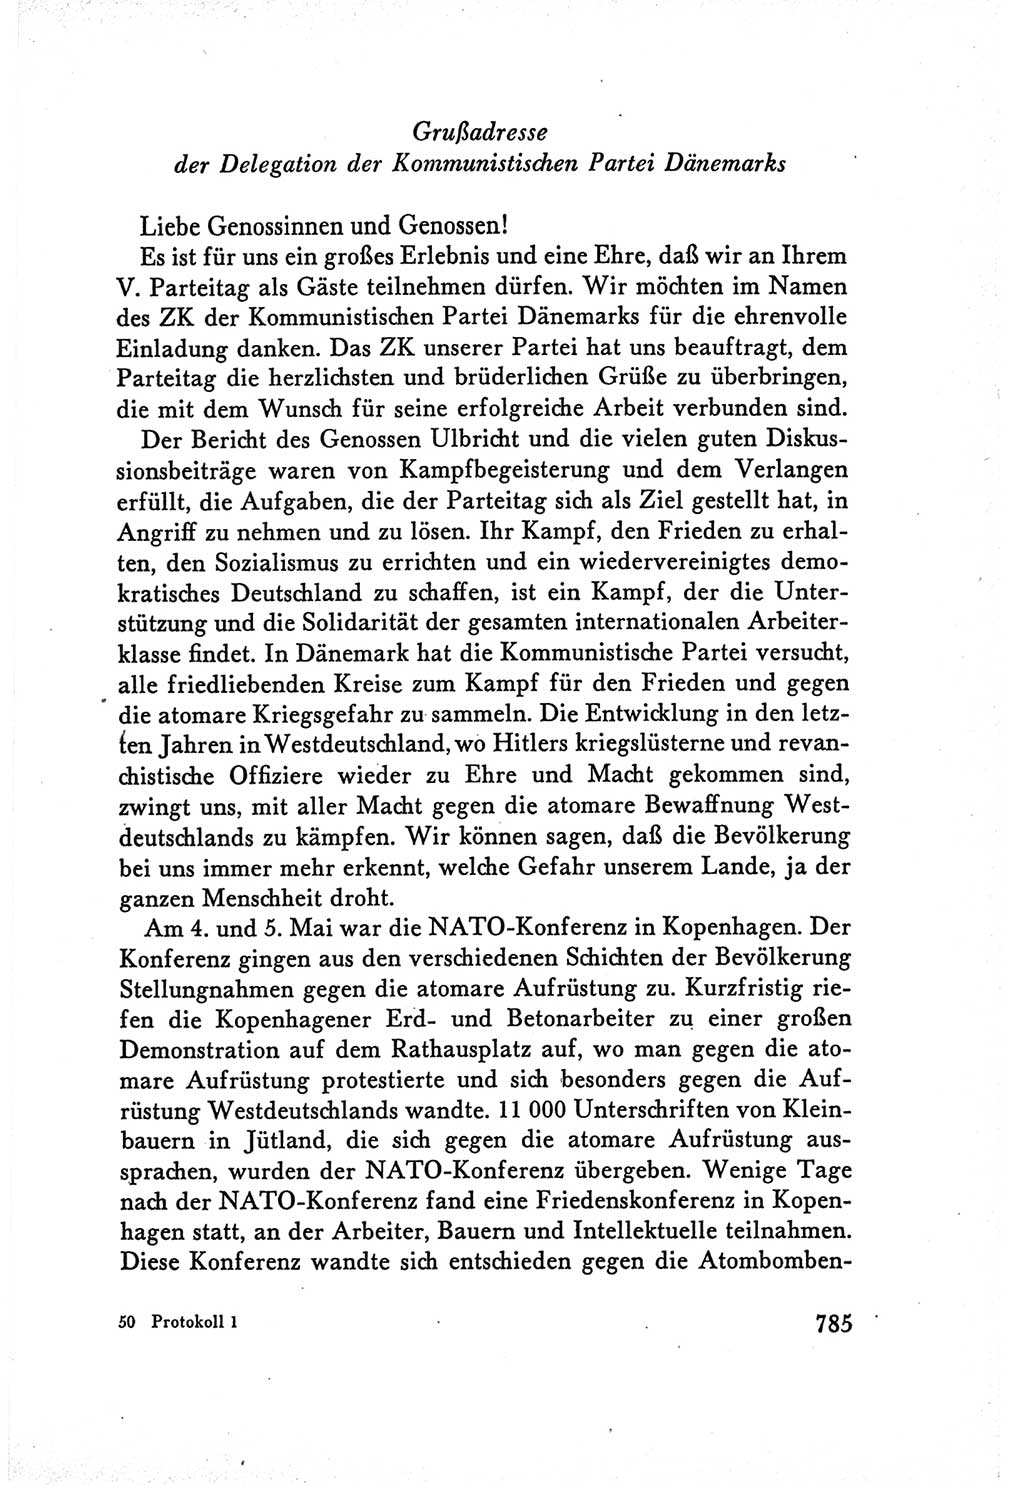 Protokoll der Verhandlungen des Ⅴ. Parteitages der Sozialistischen Einheitspartei Deutschlands (SED) [Deutsche Demokratische Republik (DDR)] 1958, Seite 785